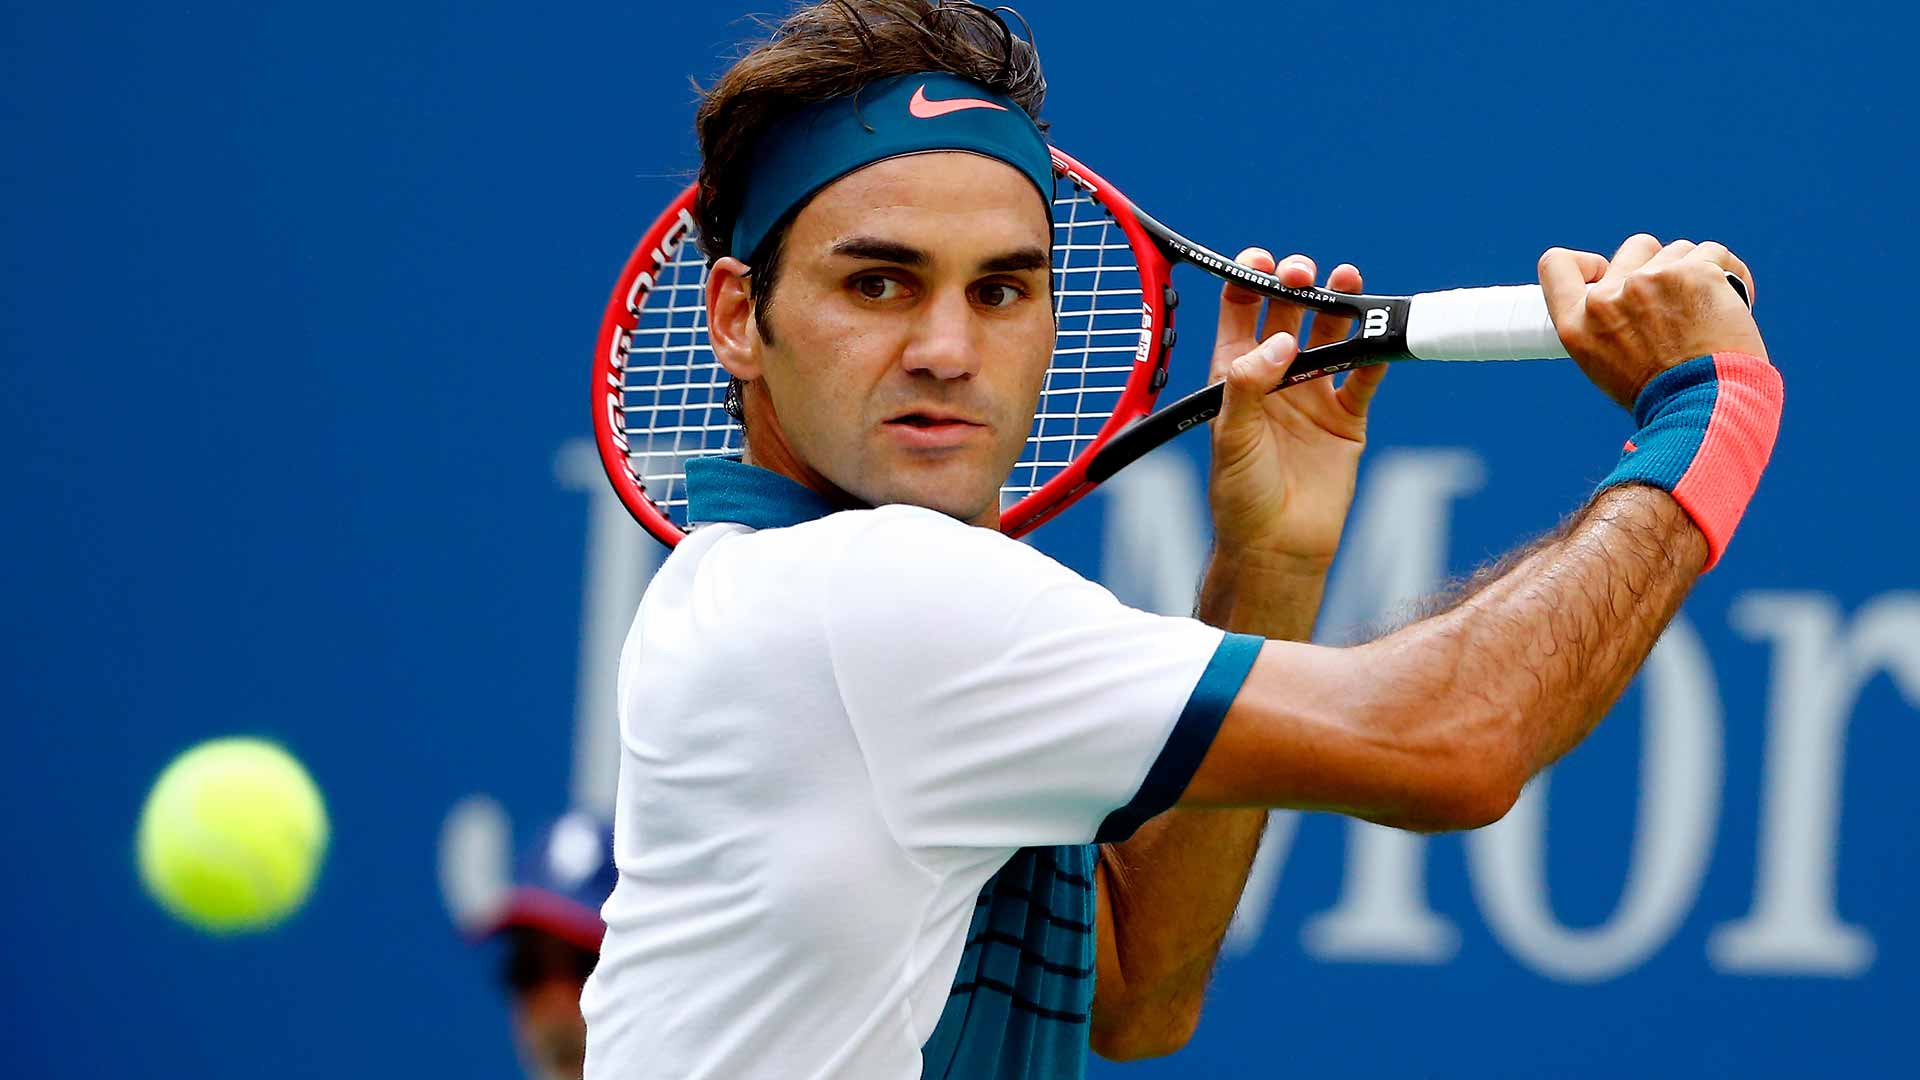 Tênis: Federer bate búlgaro e obtém 300ª vitória em Grand Slams; Djokovic supera freguês